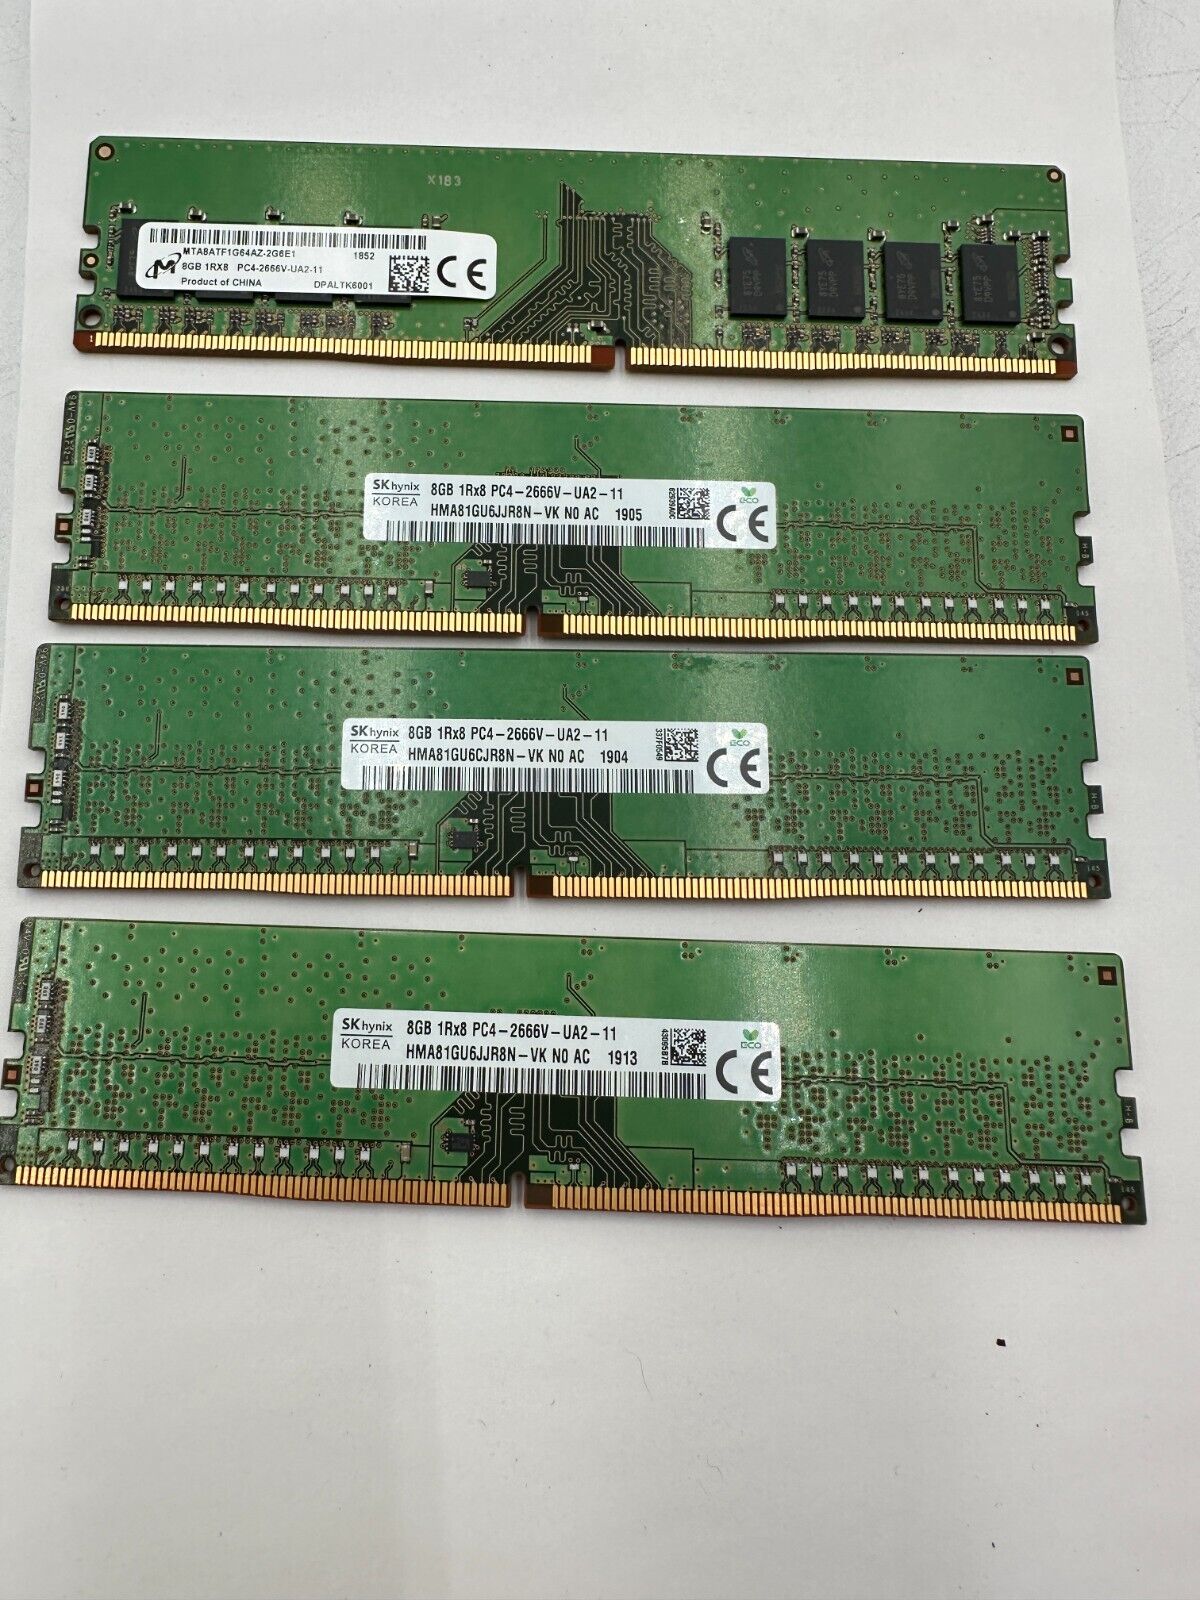 SK hynix/Micron/Samsung  32GB (4x8GB) DDR4 2666MHz ECC RAM Sticks 1Rx8 PC4-2666V